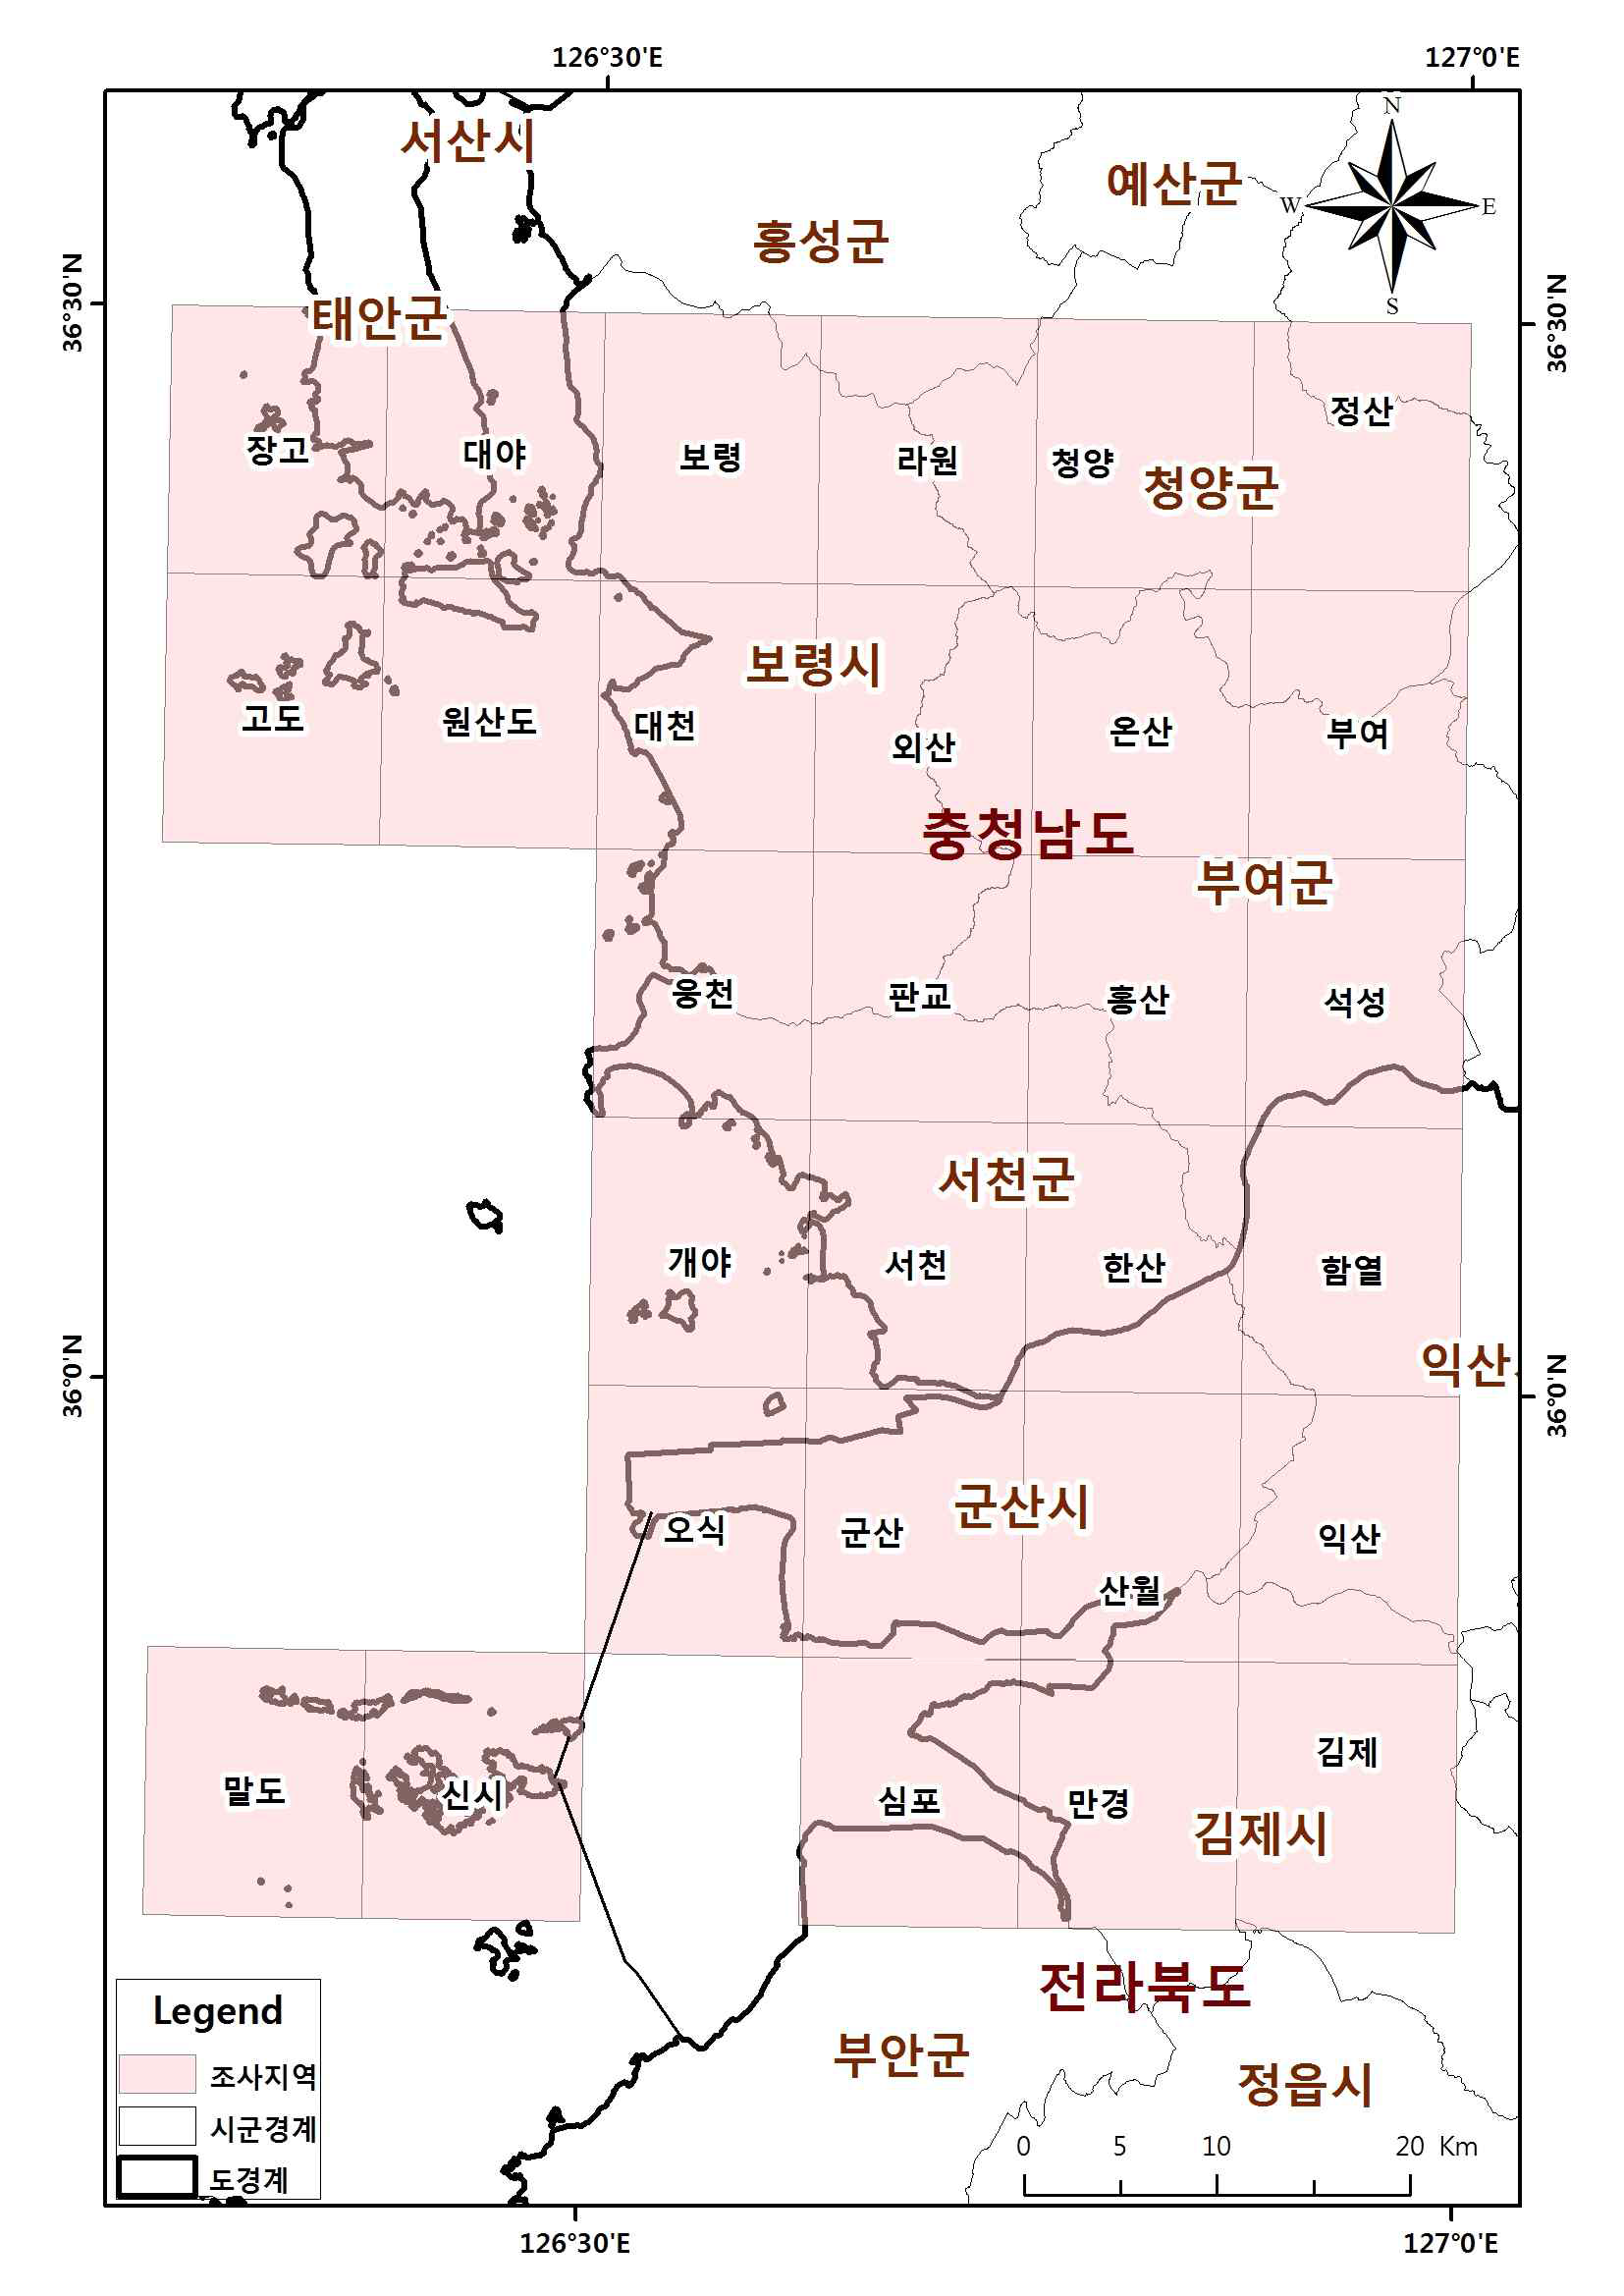 Survey sites of Seohae 3 sub-regions.